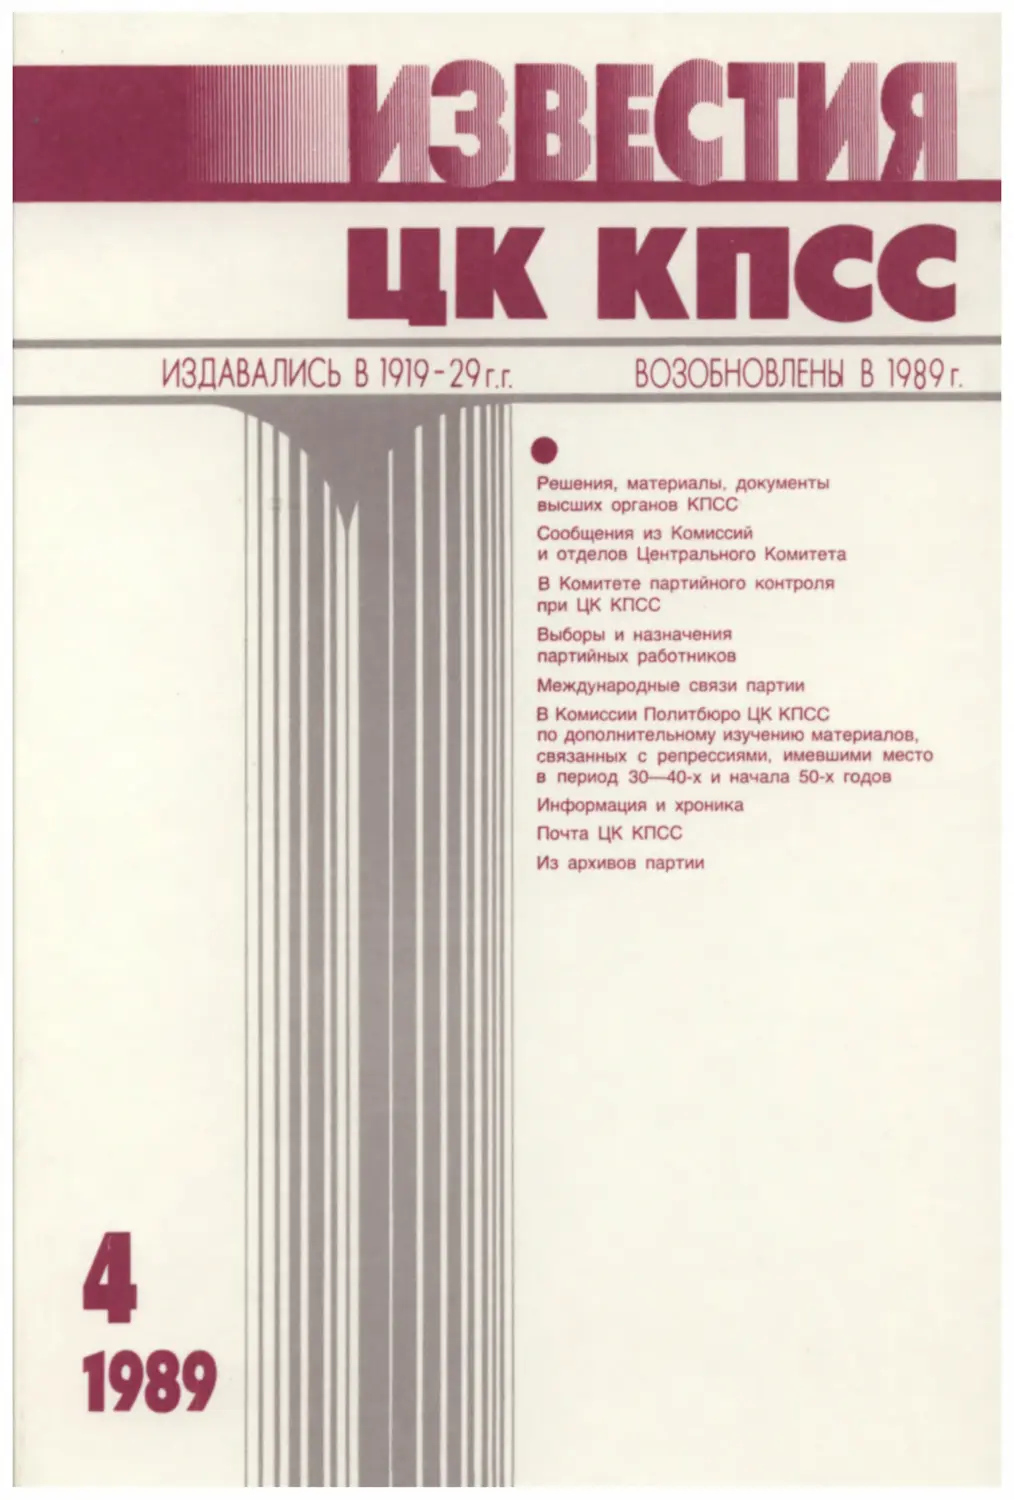 Известия ЦК КПСС 1989.04